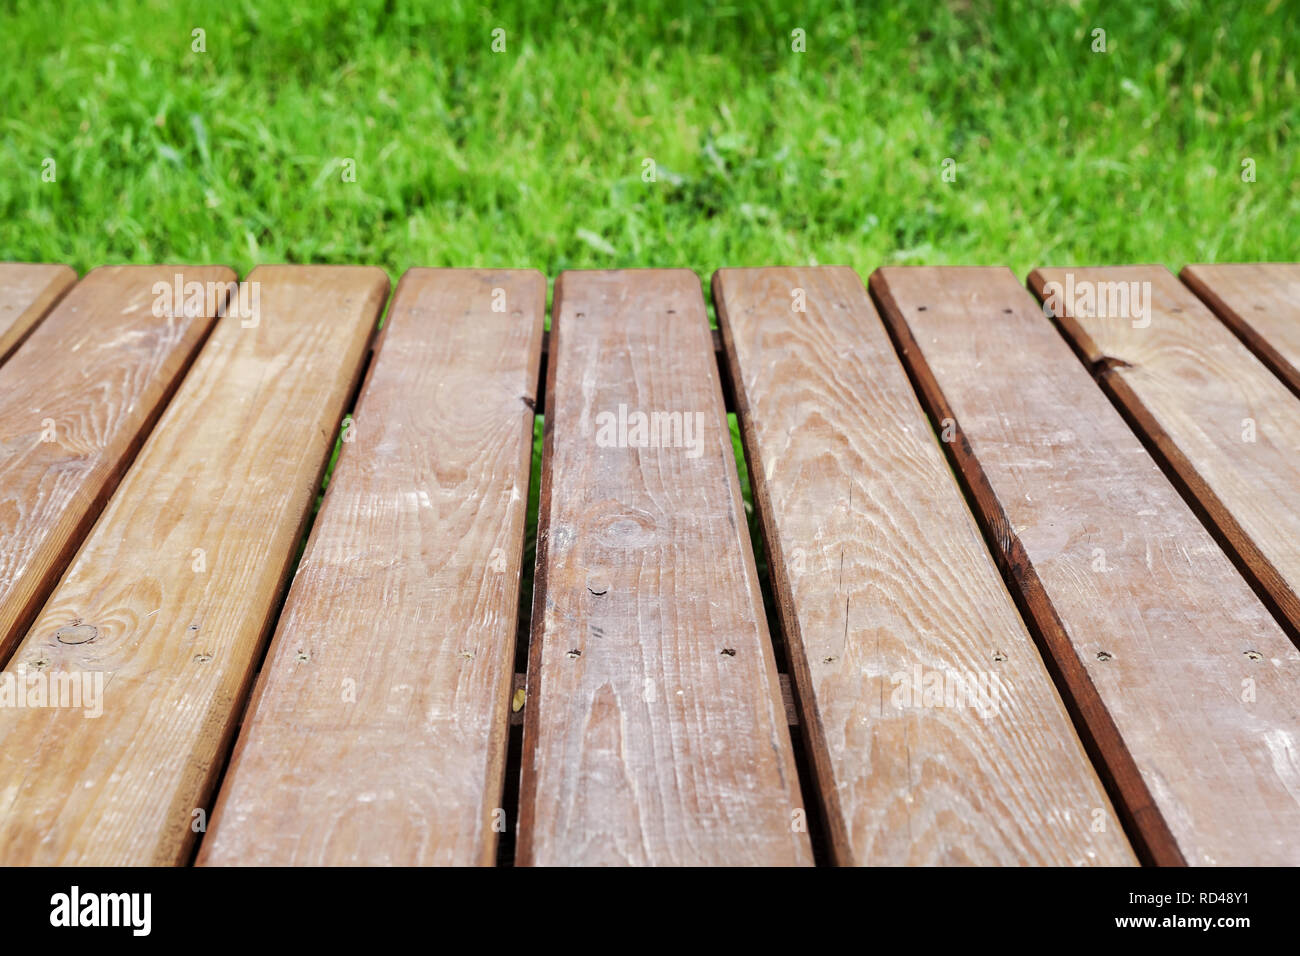 Vue en perspective d'une table en bois sur la pelouse avec de l'herbe bien verte, parc naturel de fond. Photo en gros plan avec selective focus Banque D'Images